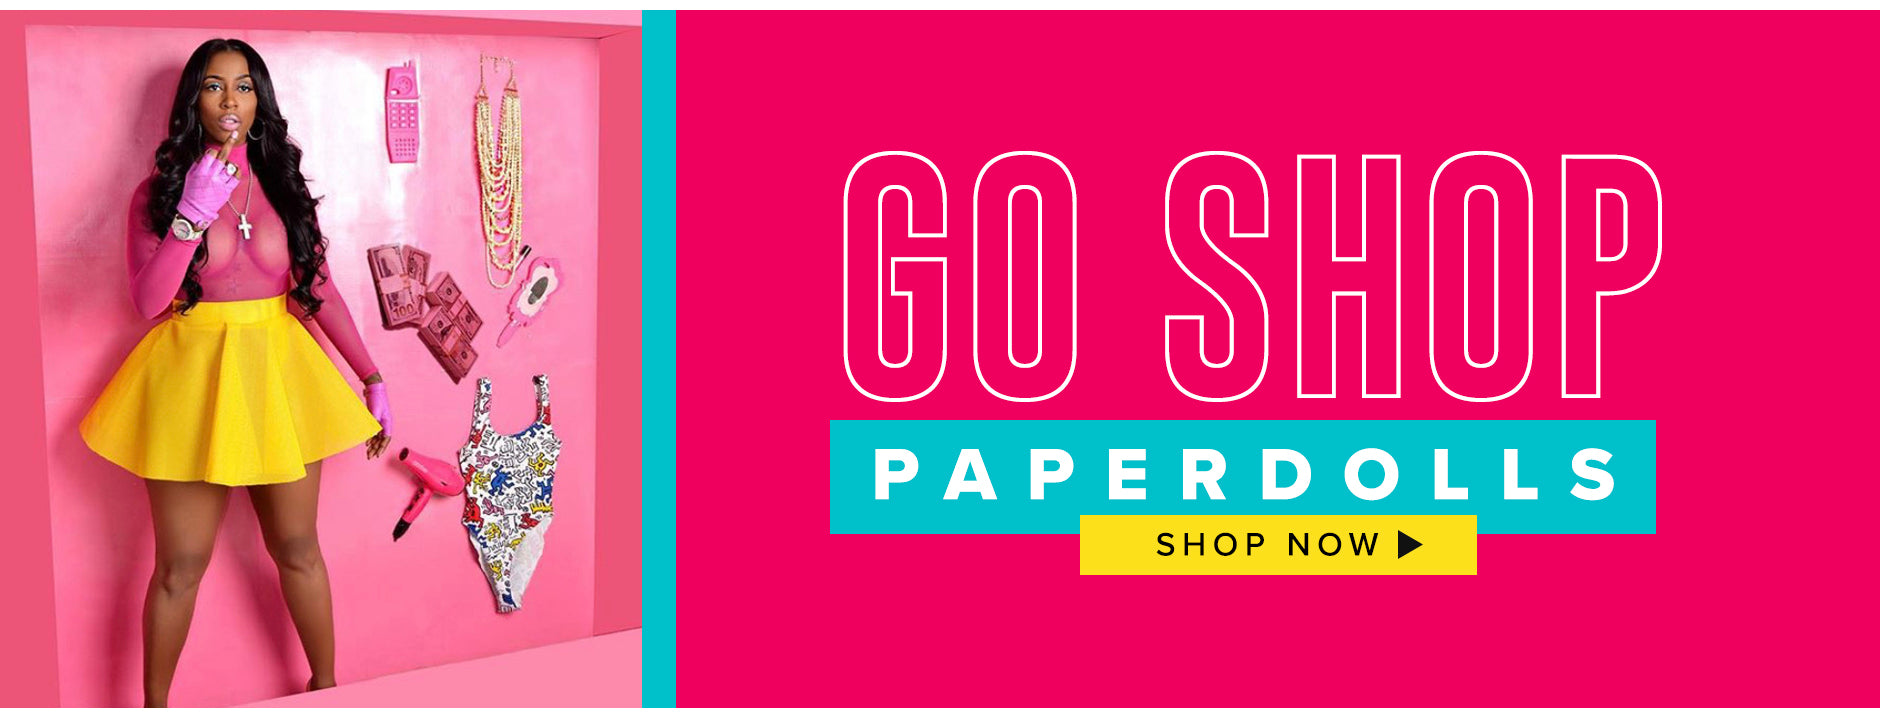 GoShop-PaperDolls